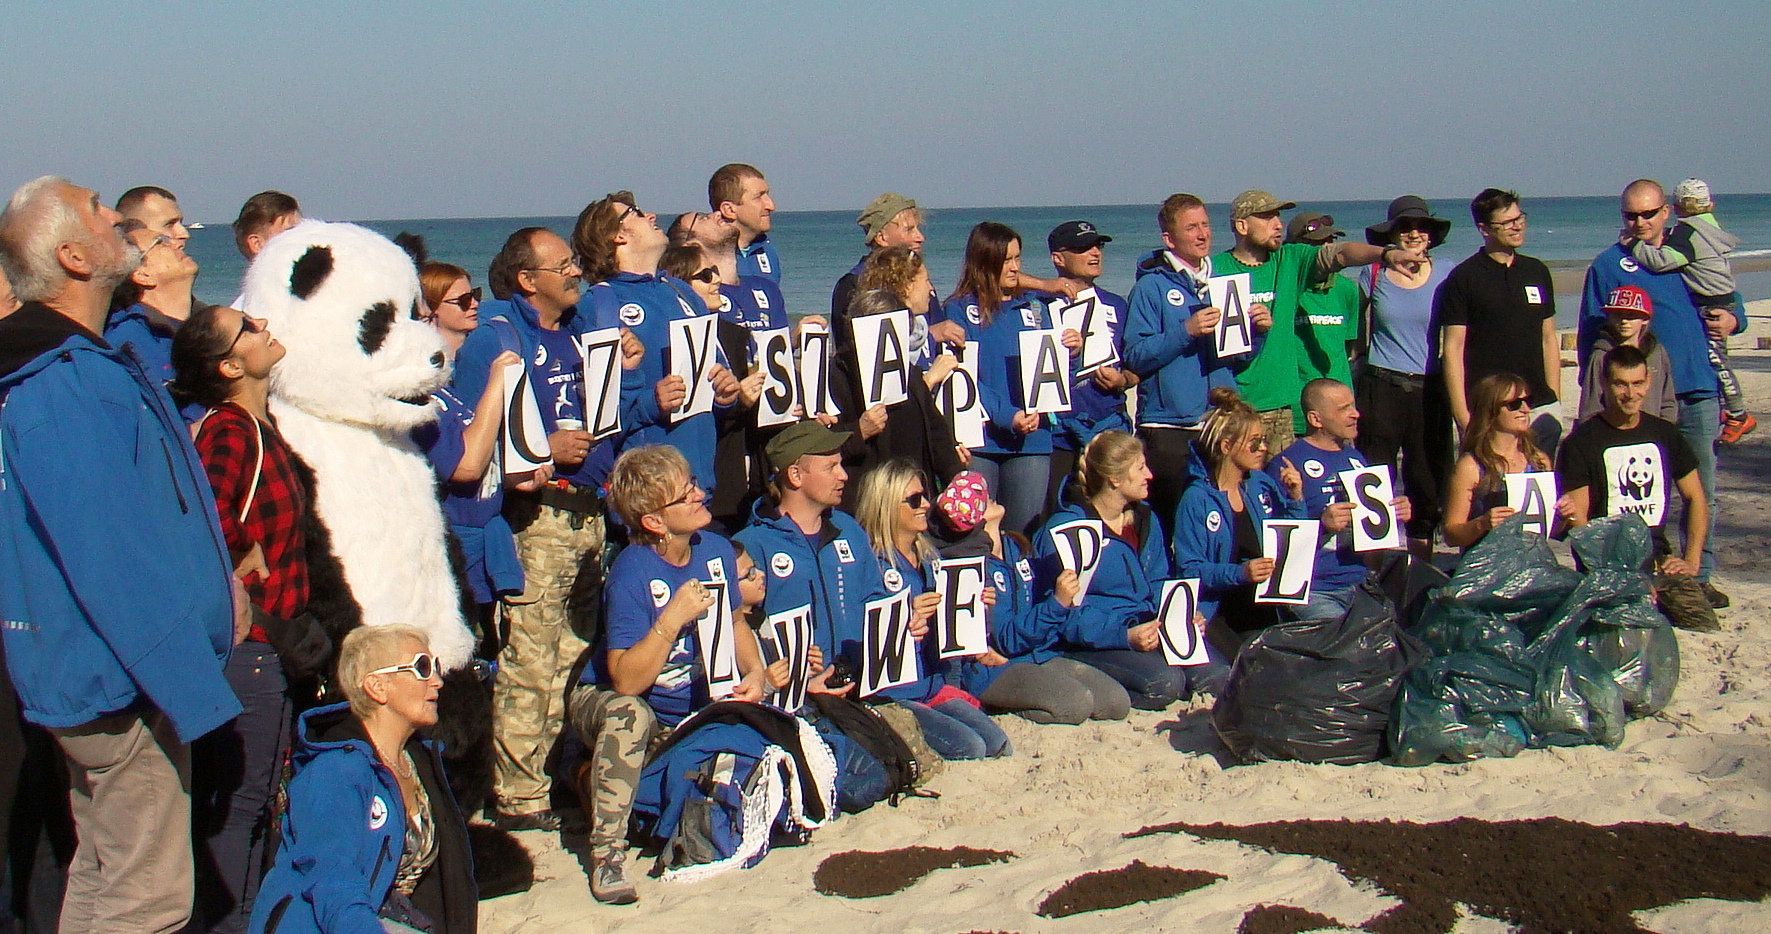 35 1 - Akcja "Czyste plaże" WWF Polska. Jest coraz lepiej! (+zdjęcia)